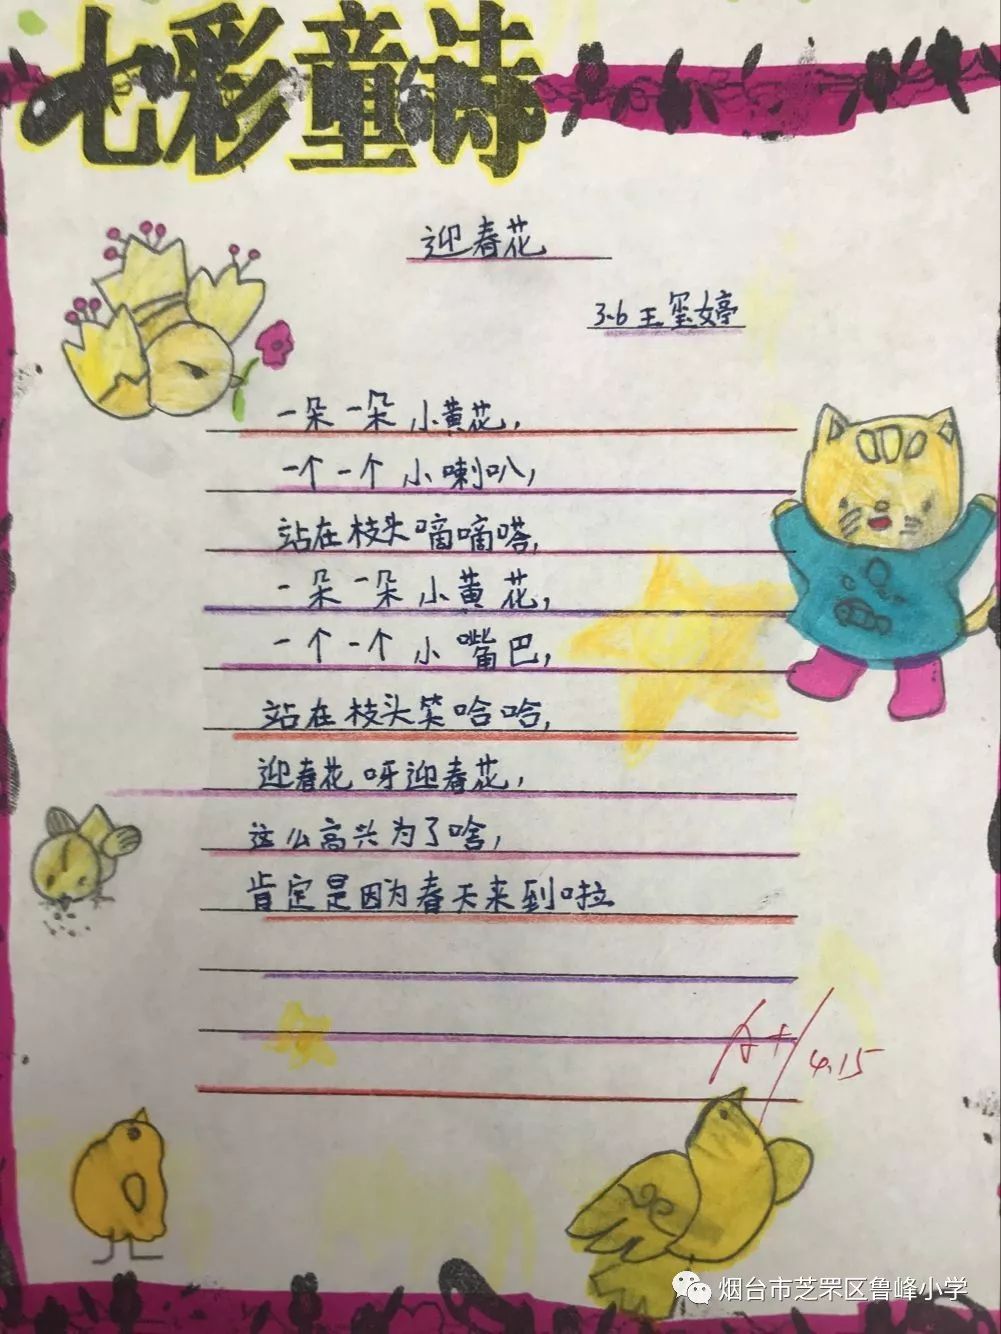 鲁峰61课程用诗书写七彩童年三年级儿童诗作品展